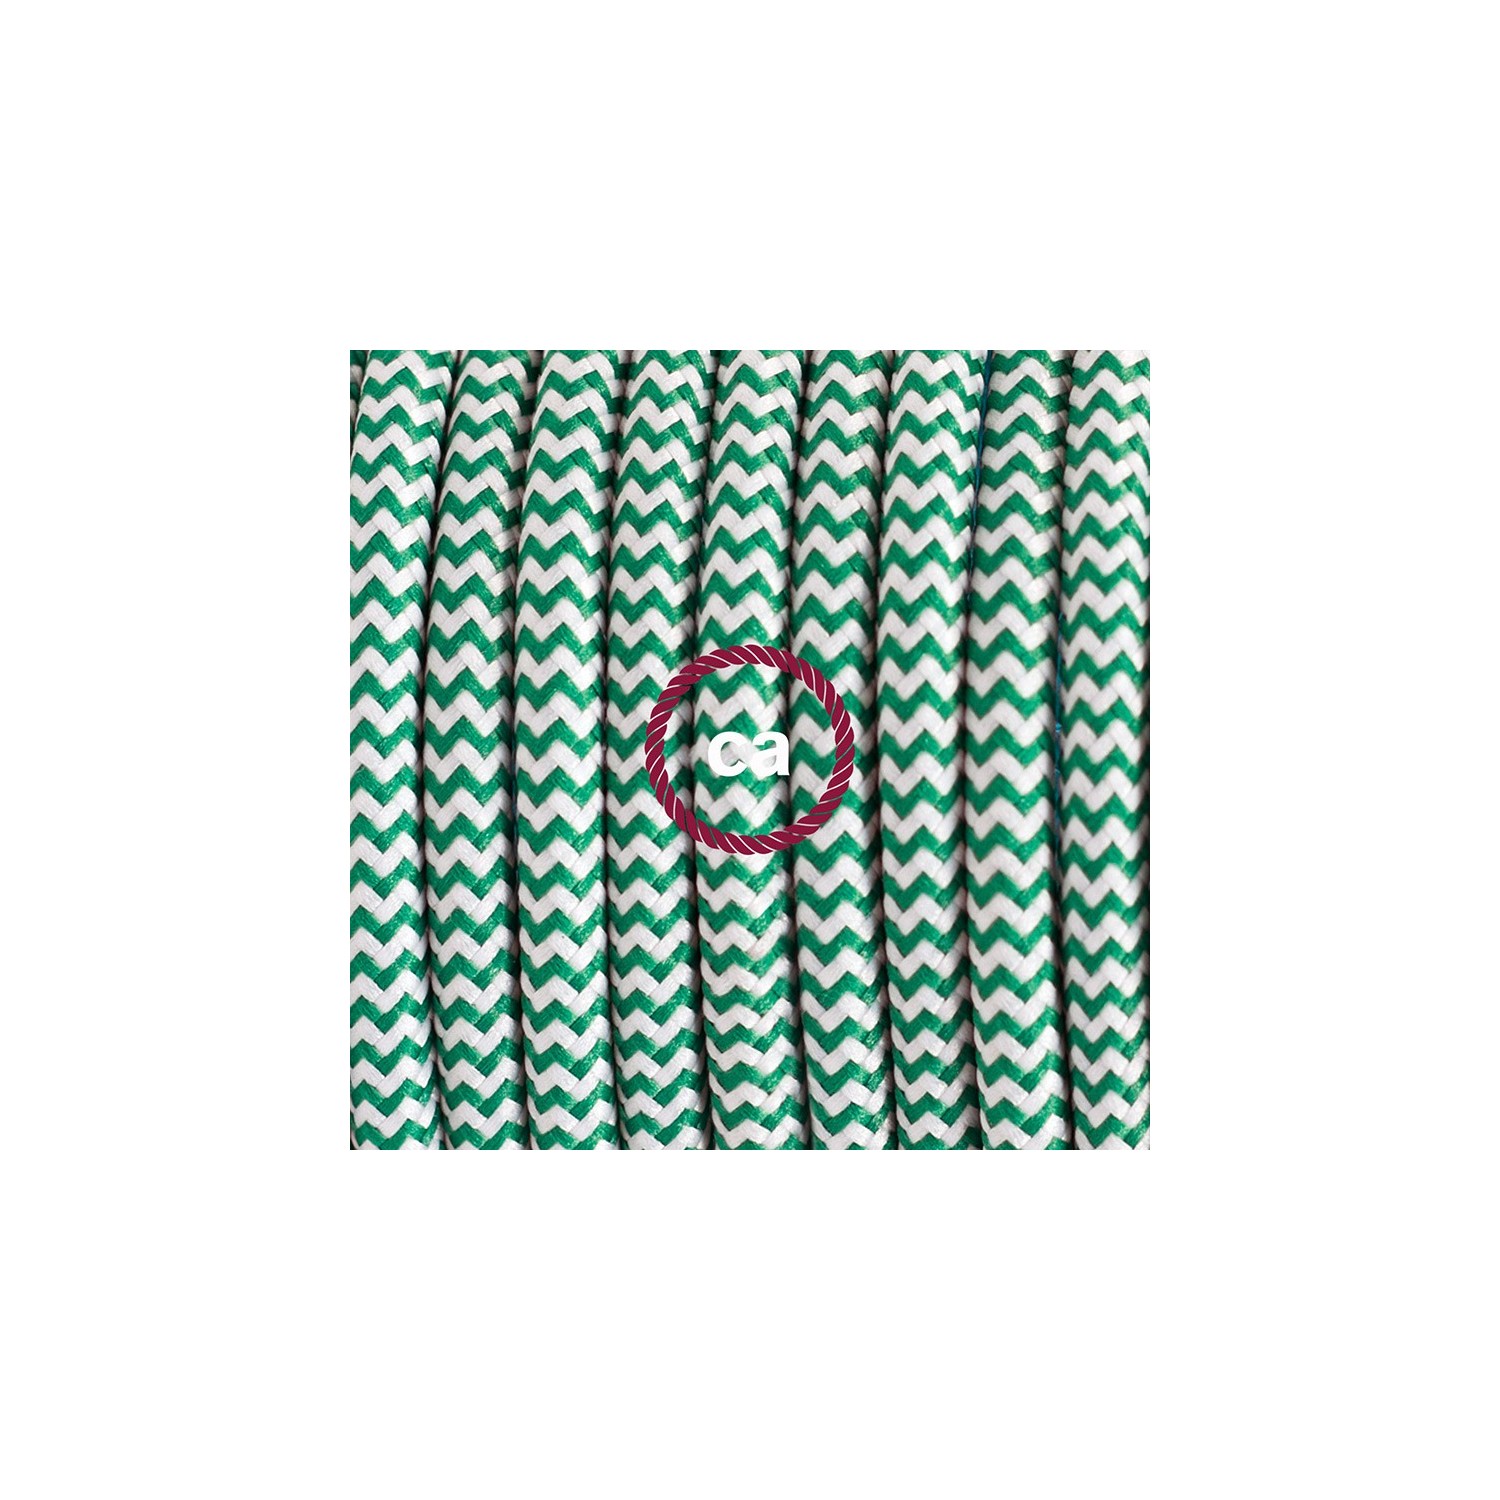 Ronde flexibele textielkabel van viscose met schakelaar en stekker.RZ06 - zigzag wit/groen 1,80 m.